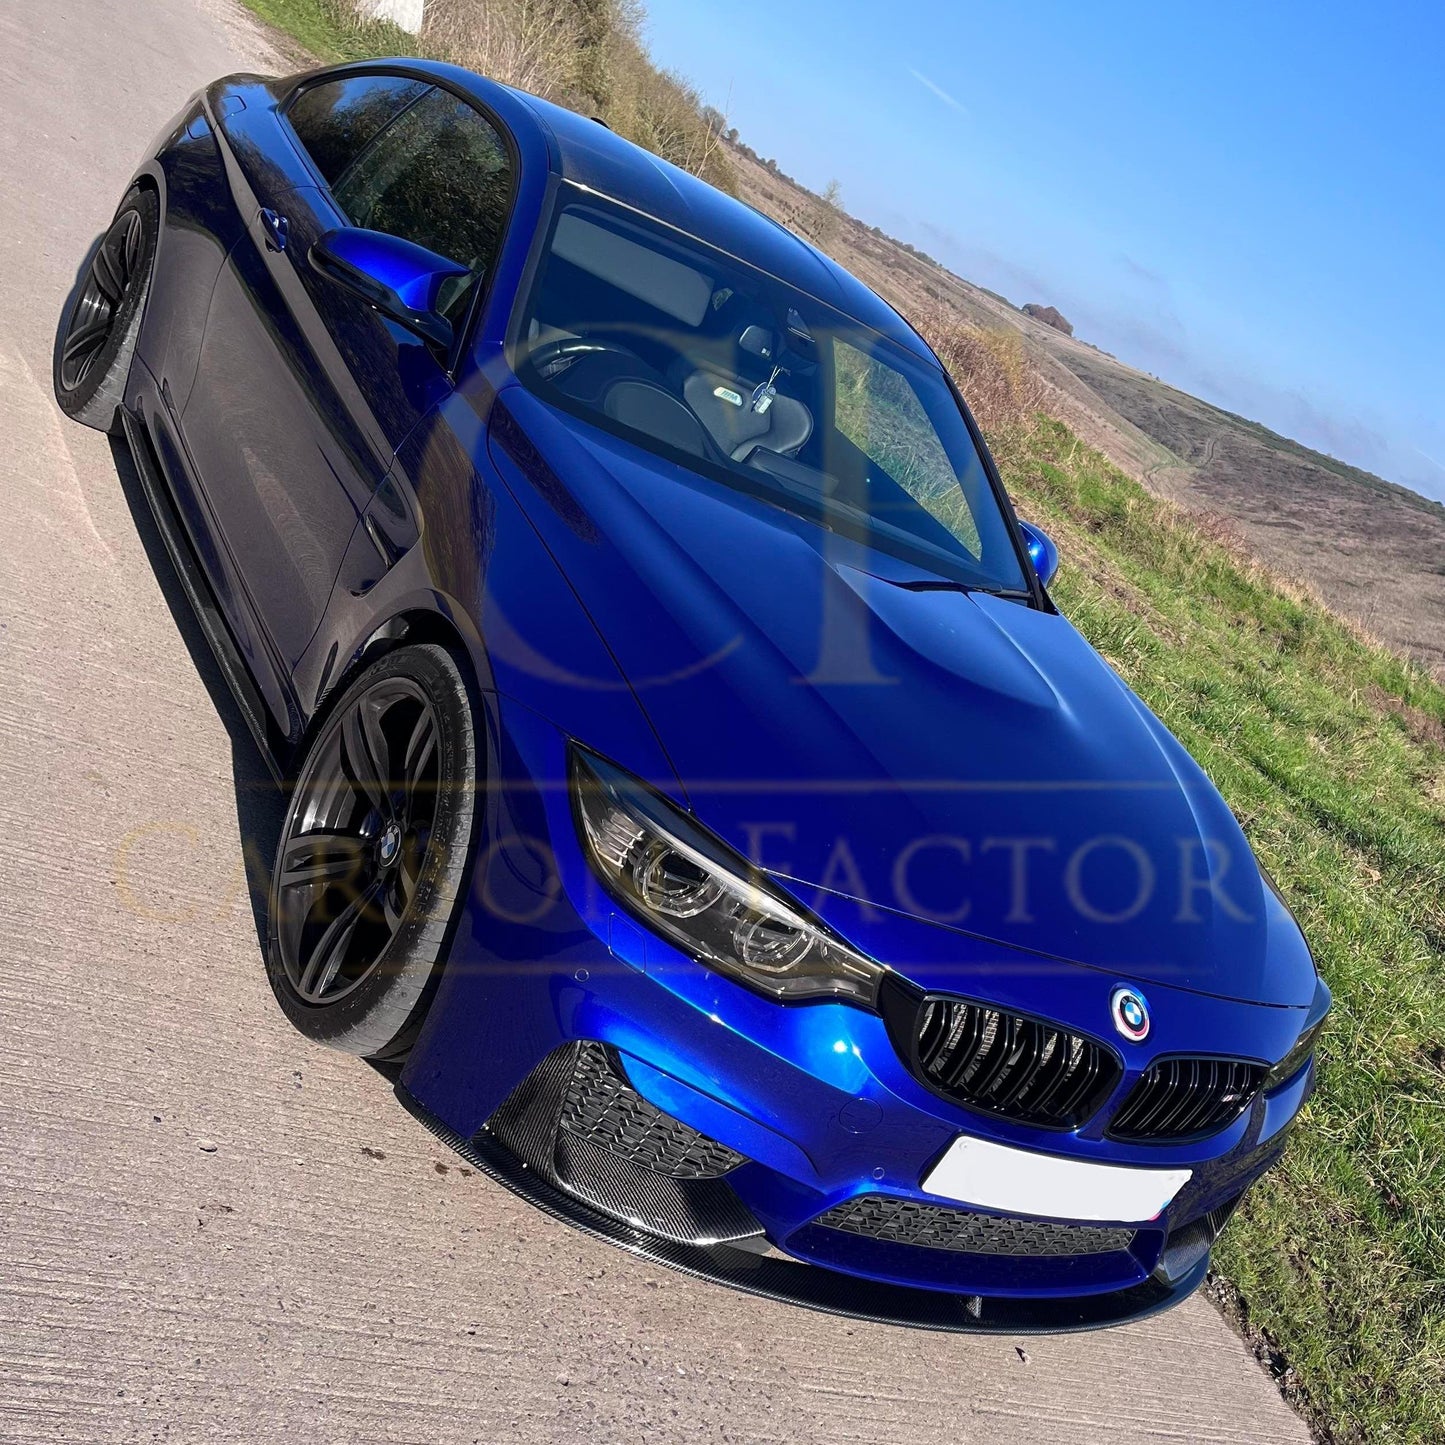 BMW F80 M3 F82 F83 M4 M Performance Style Carbon Fibre Front Splitter 14-20 (3 Pieces design)-Carbon Factory